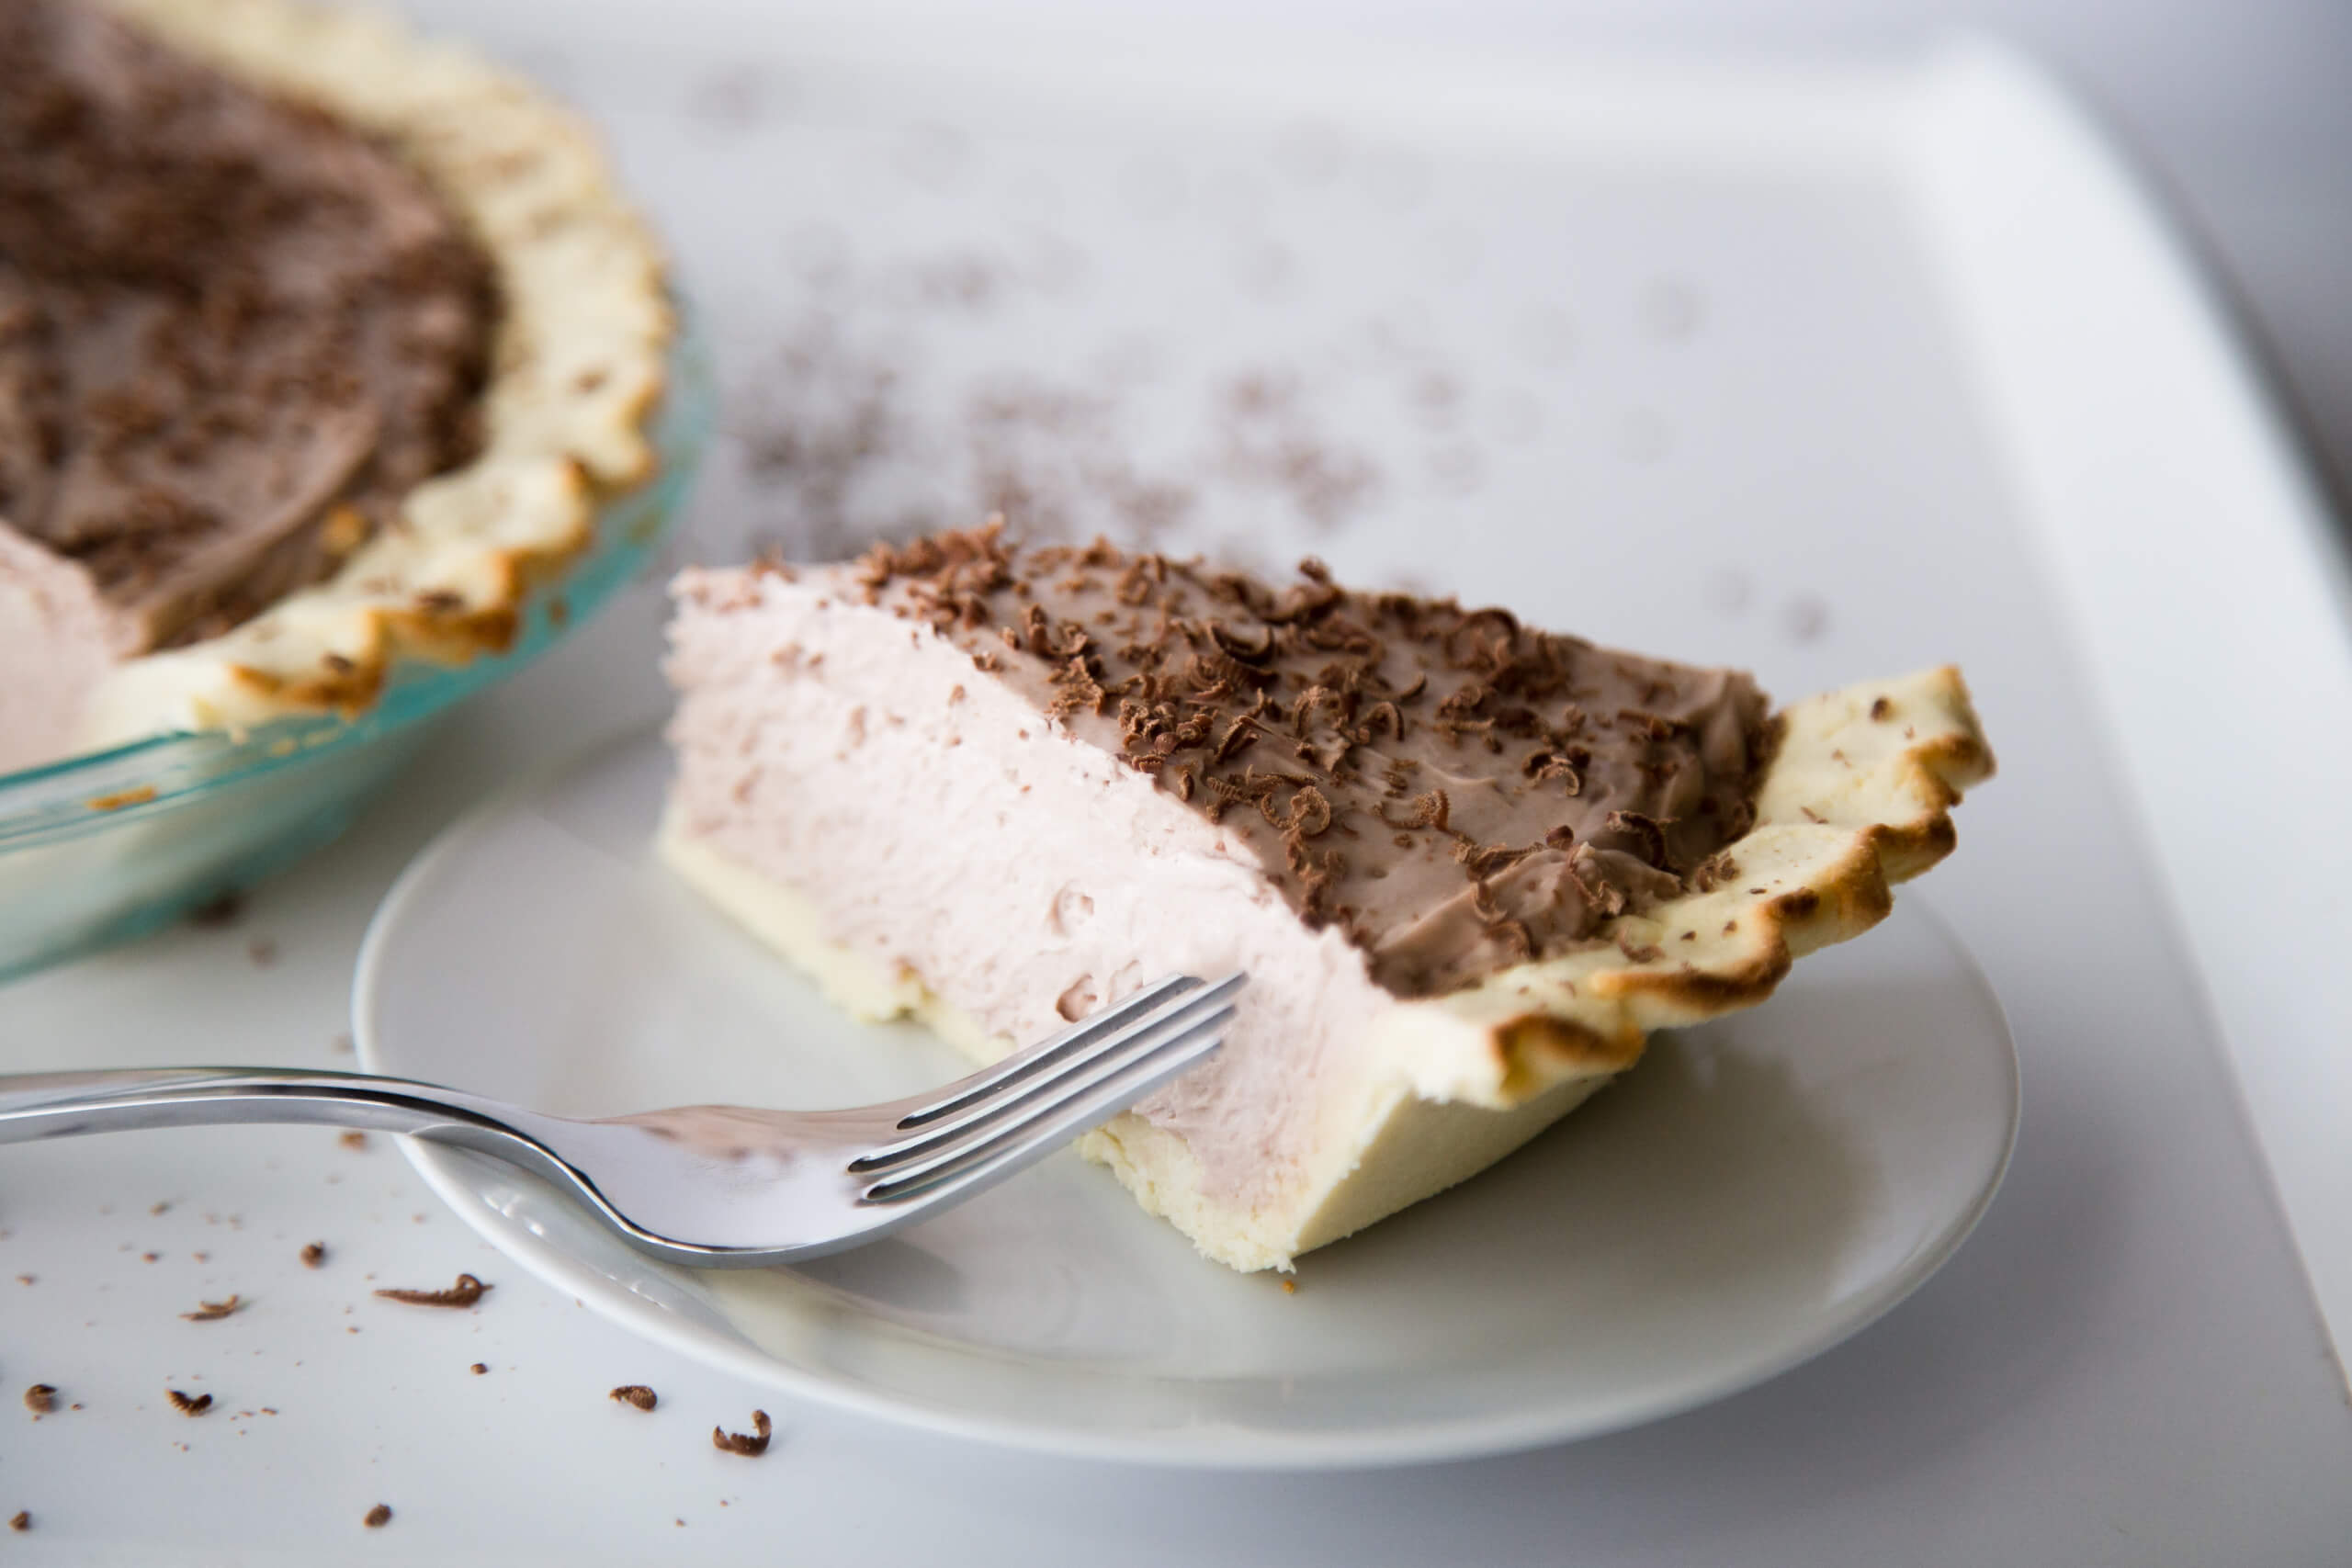 Joe Stauffer’s Chocolate Cream Pie